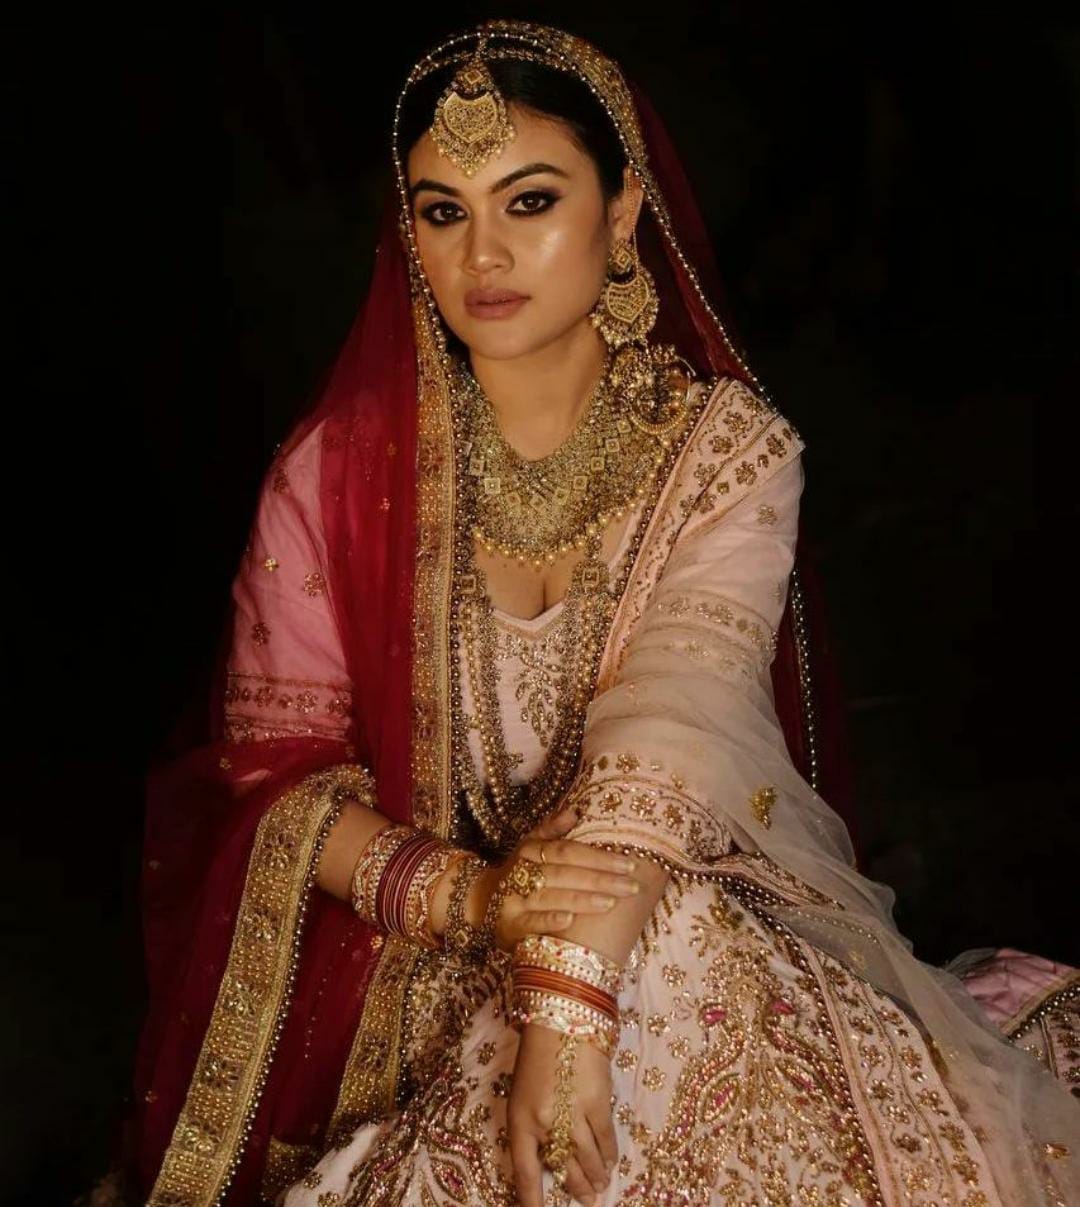 pawandeep-kaur-makeup-artist-chandigarh